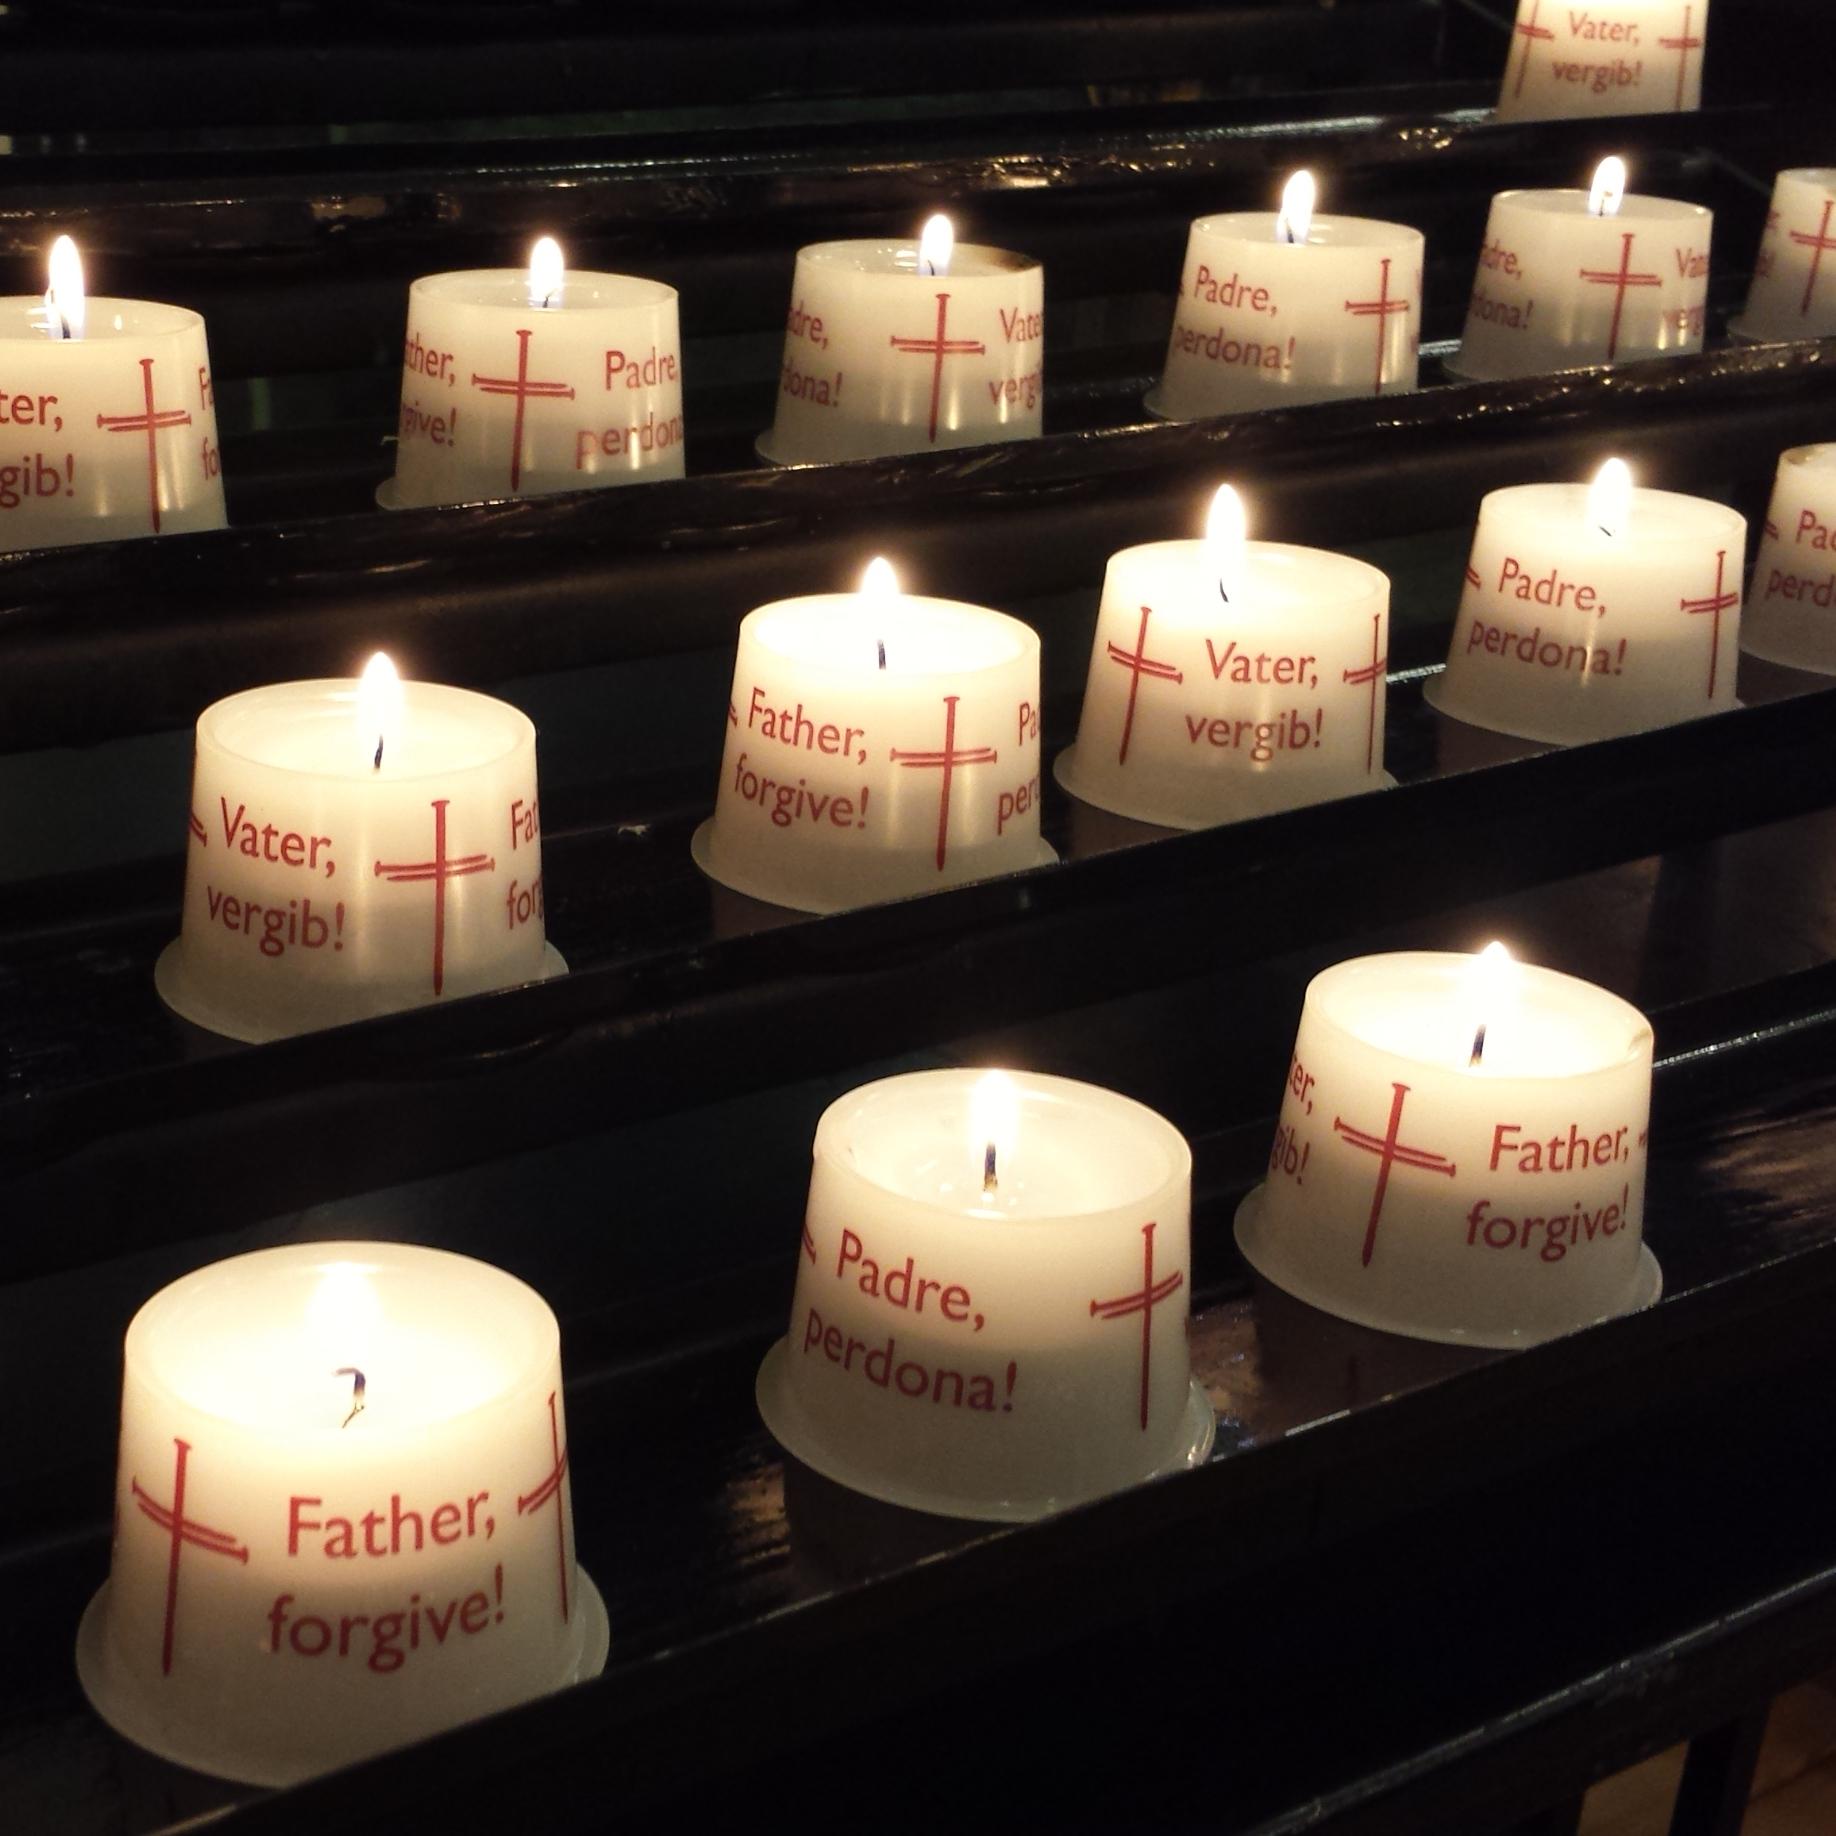 Kerzen in der Nagelkreuzkapelle mit der Aufschrift "Vater, vergib" in mehreren Sprachen